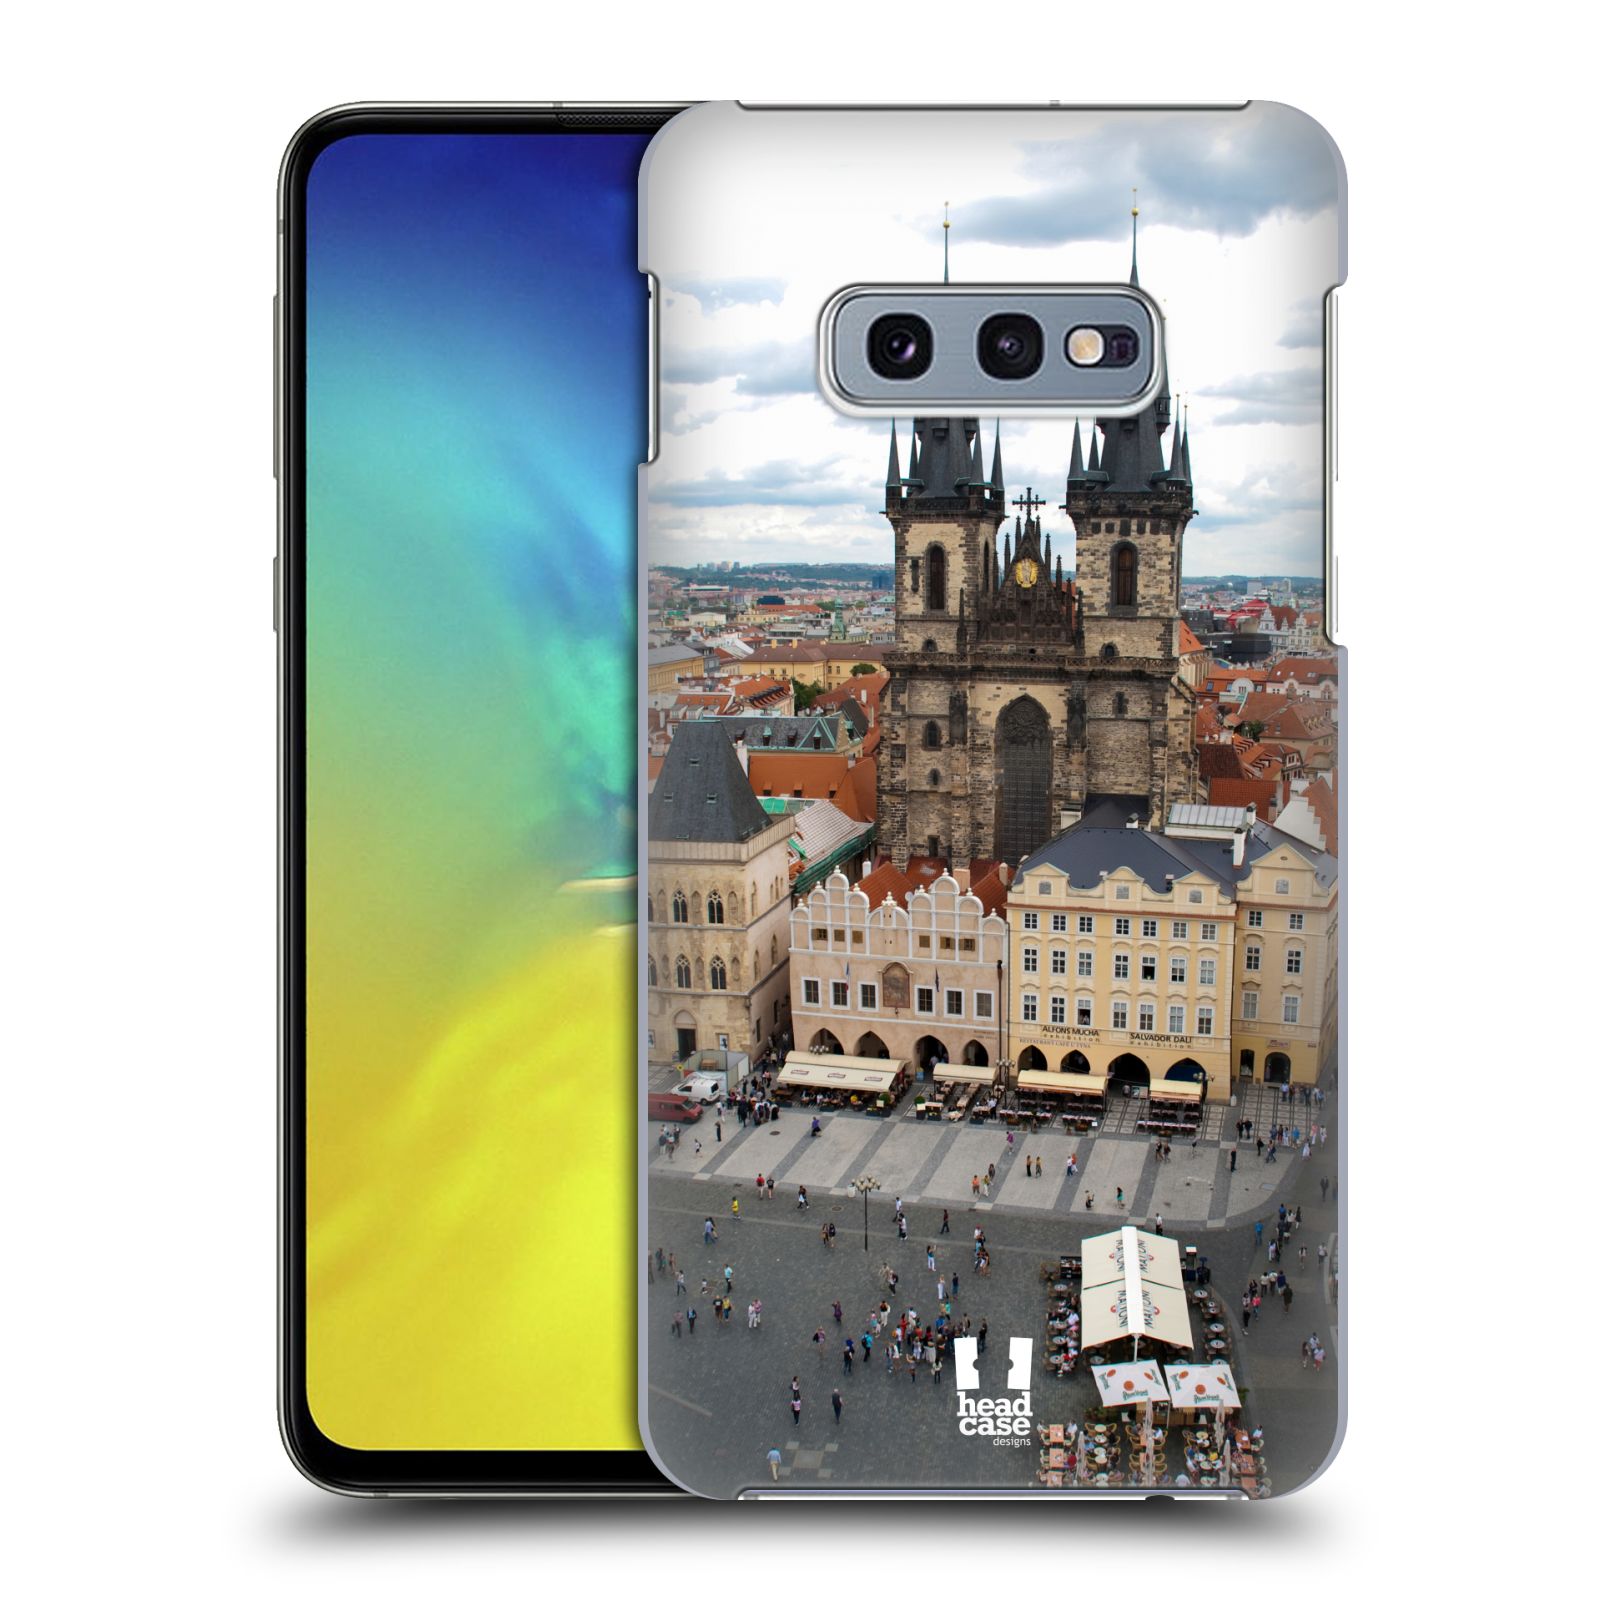 Pouzdro na mobil Samsung Galaxy S10e - HEAD CASE - vzor Města foto náměstí ČESKÁ REPUBLIKA, PRAHA, STAROMĚSTSKÉ NÁMĚSTÍ